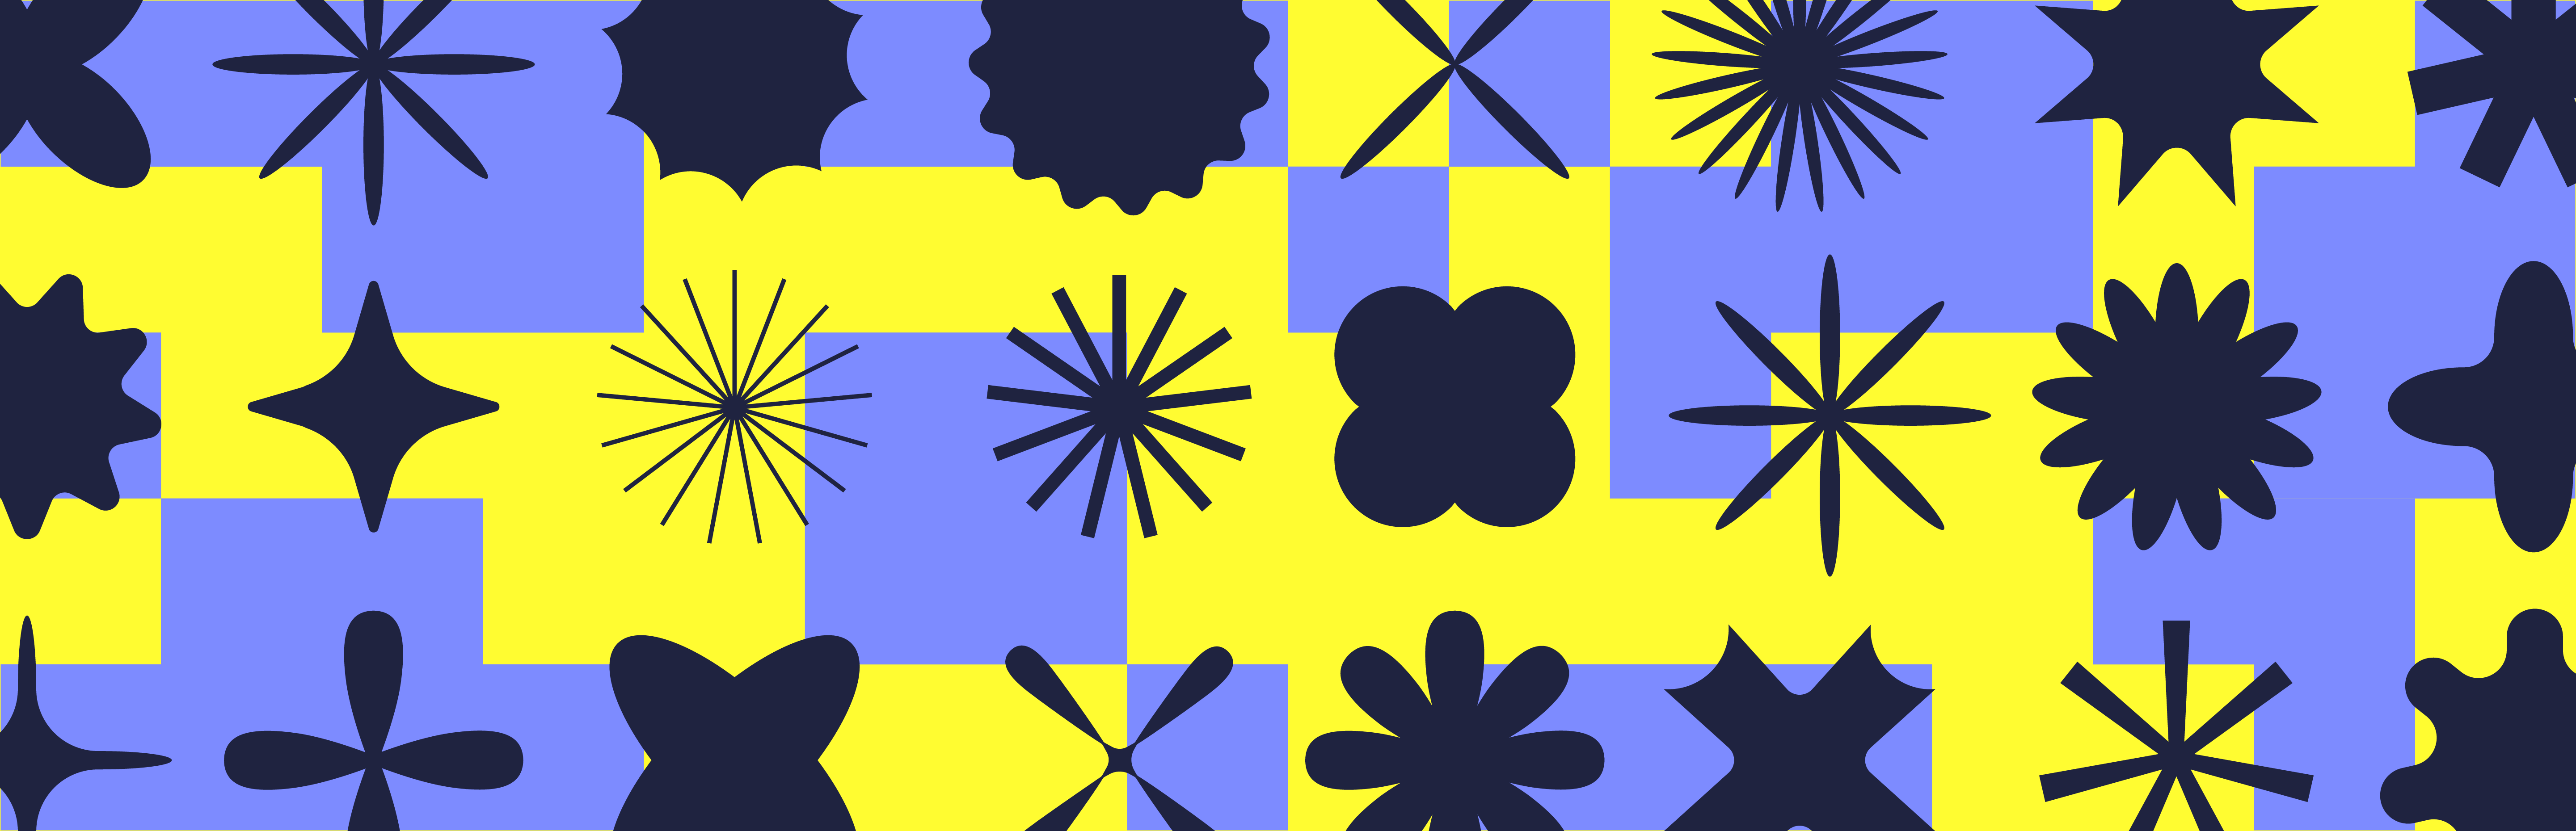 ein blau-gelb karierter Hintergrund mit schwarzen Formen